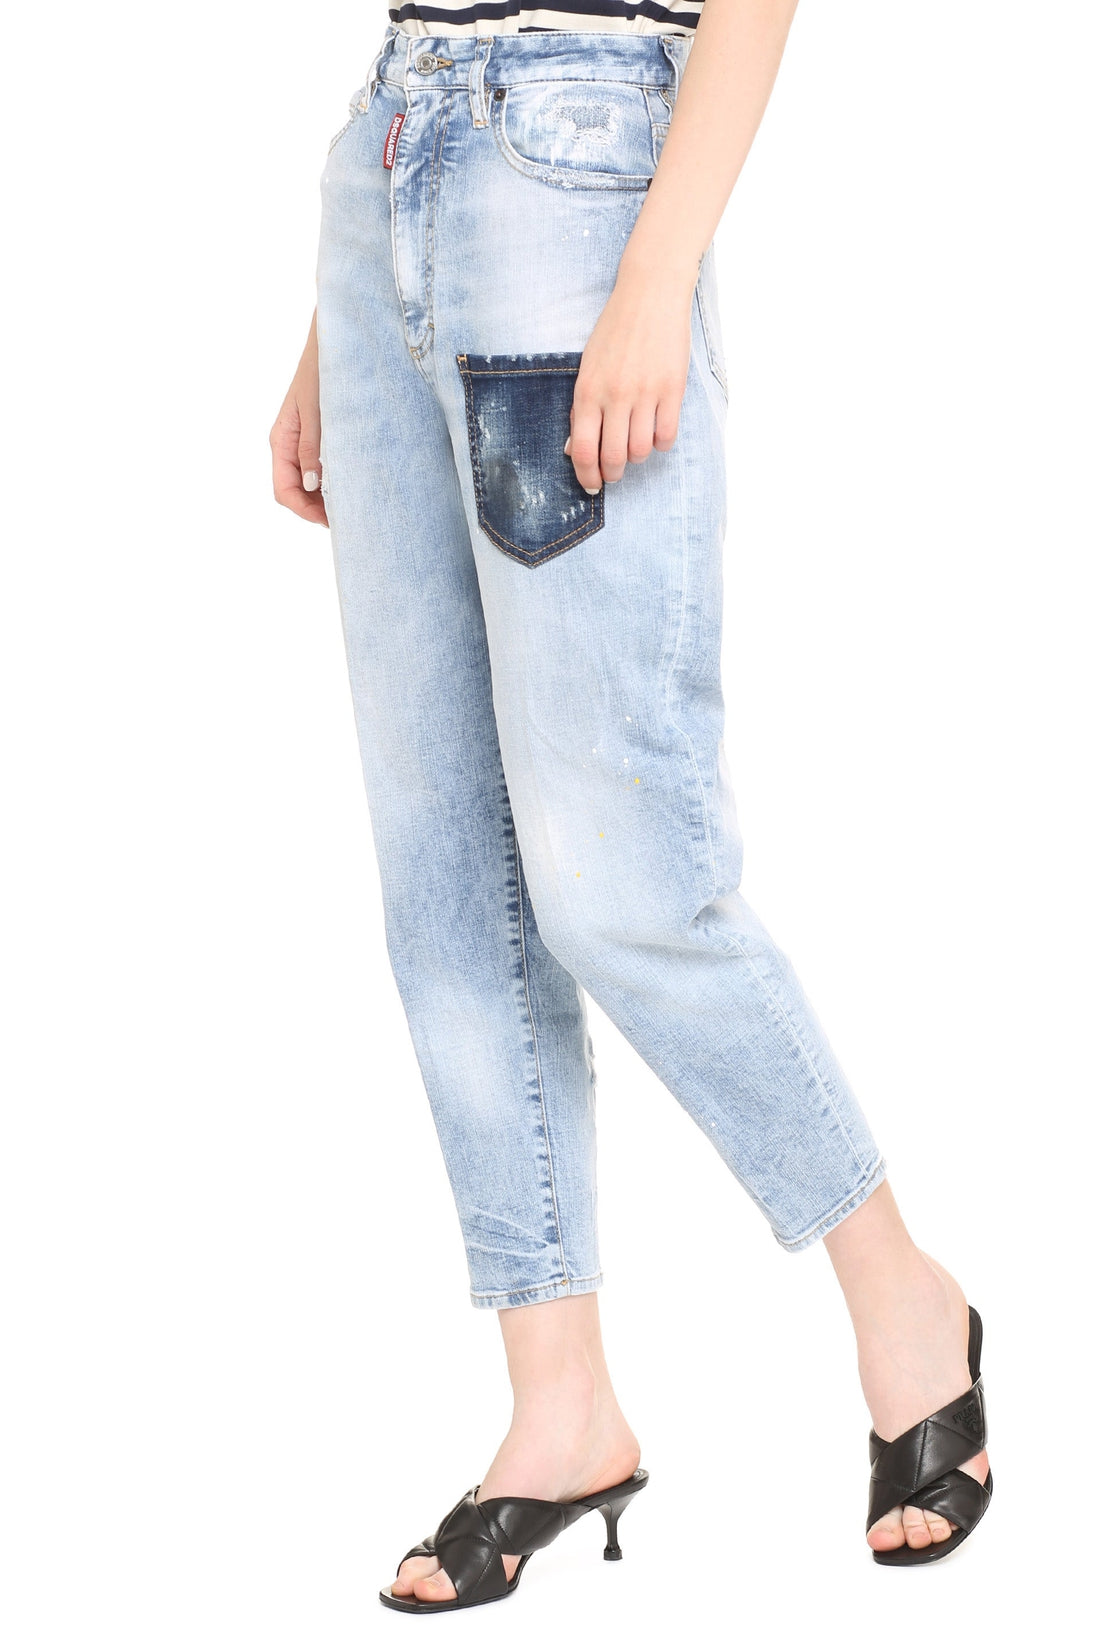 Dsquared2-OUTLET-SALE-Sasoon 80's Jean jeans-ARCHIVIST